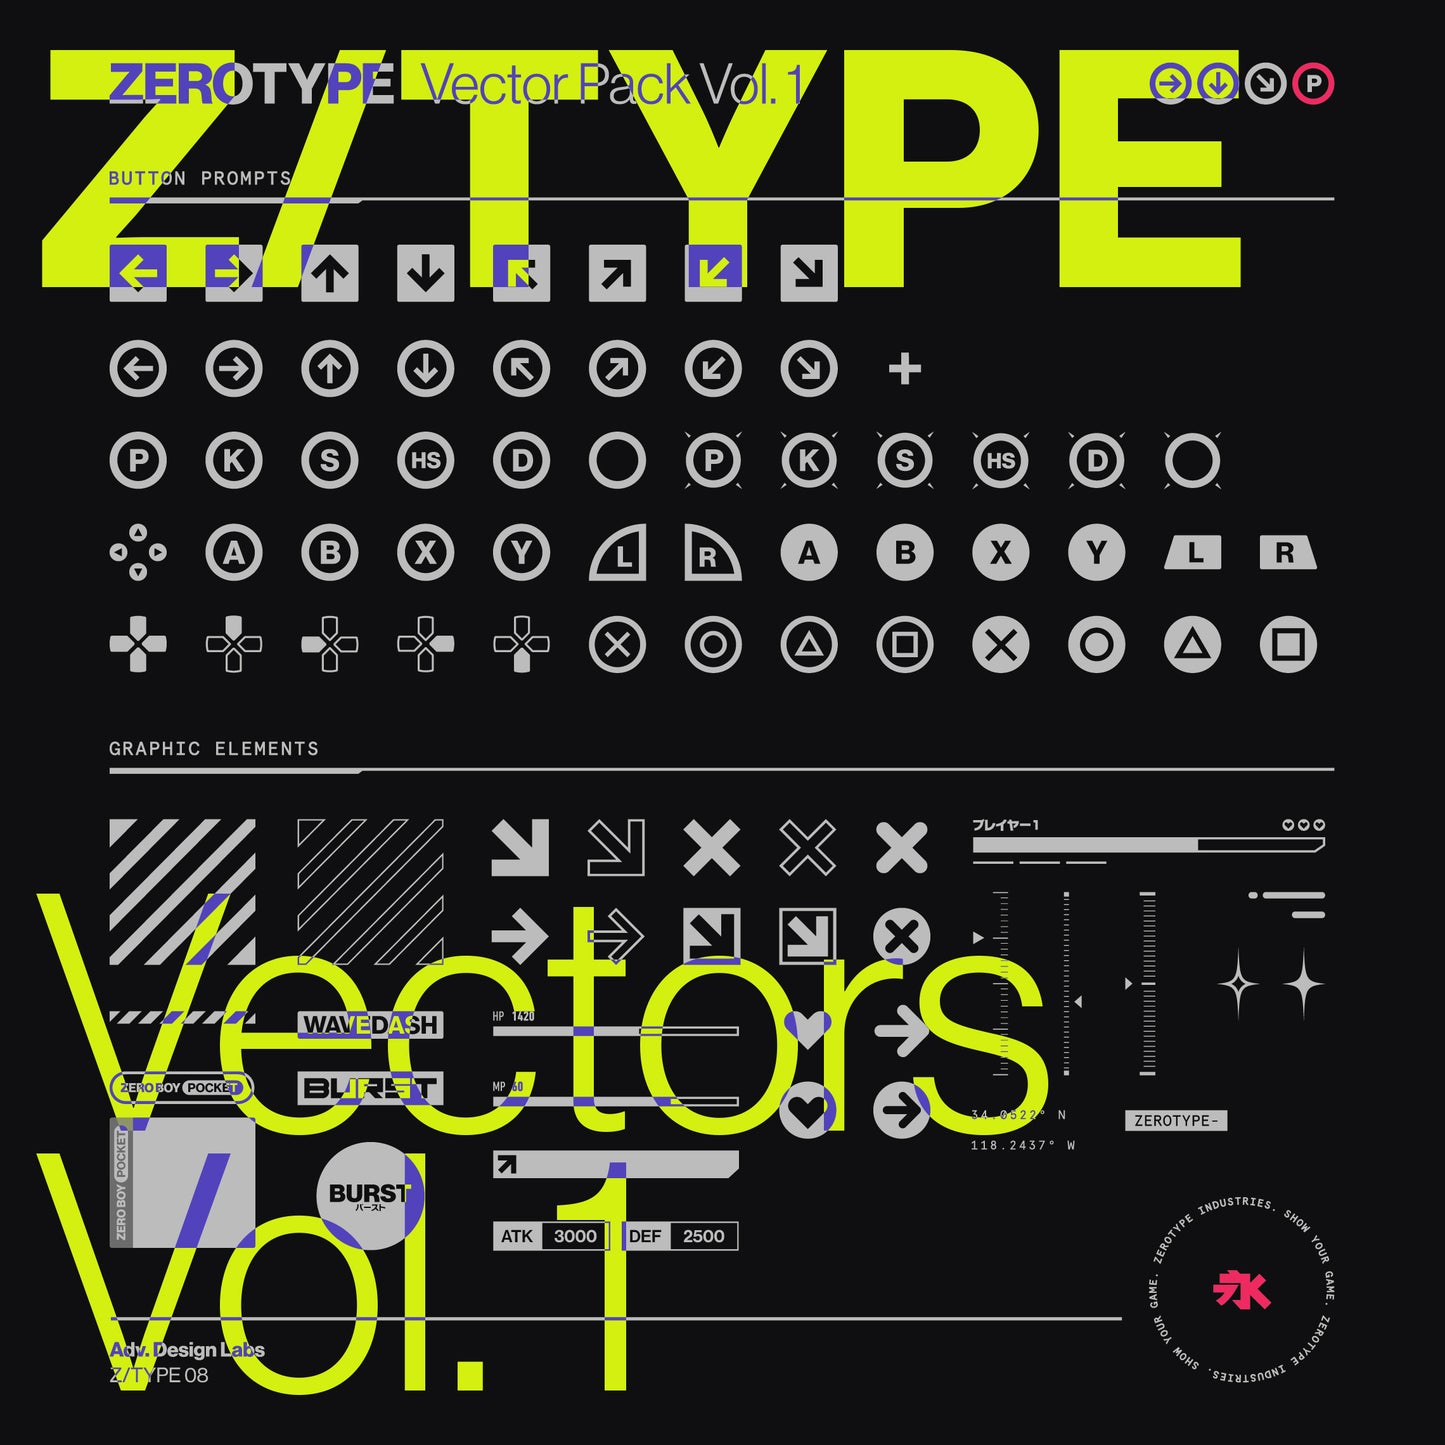 ZEROTYPE Vector Pack Vol. 1